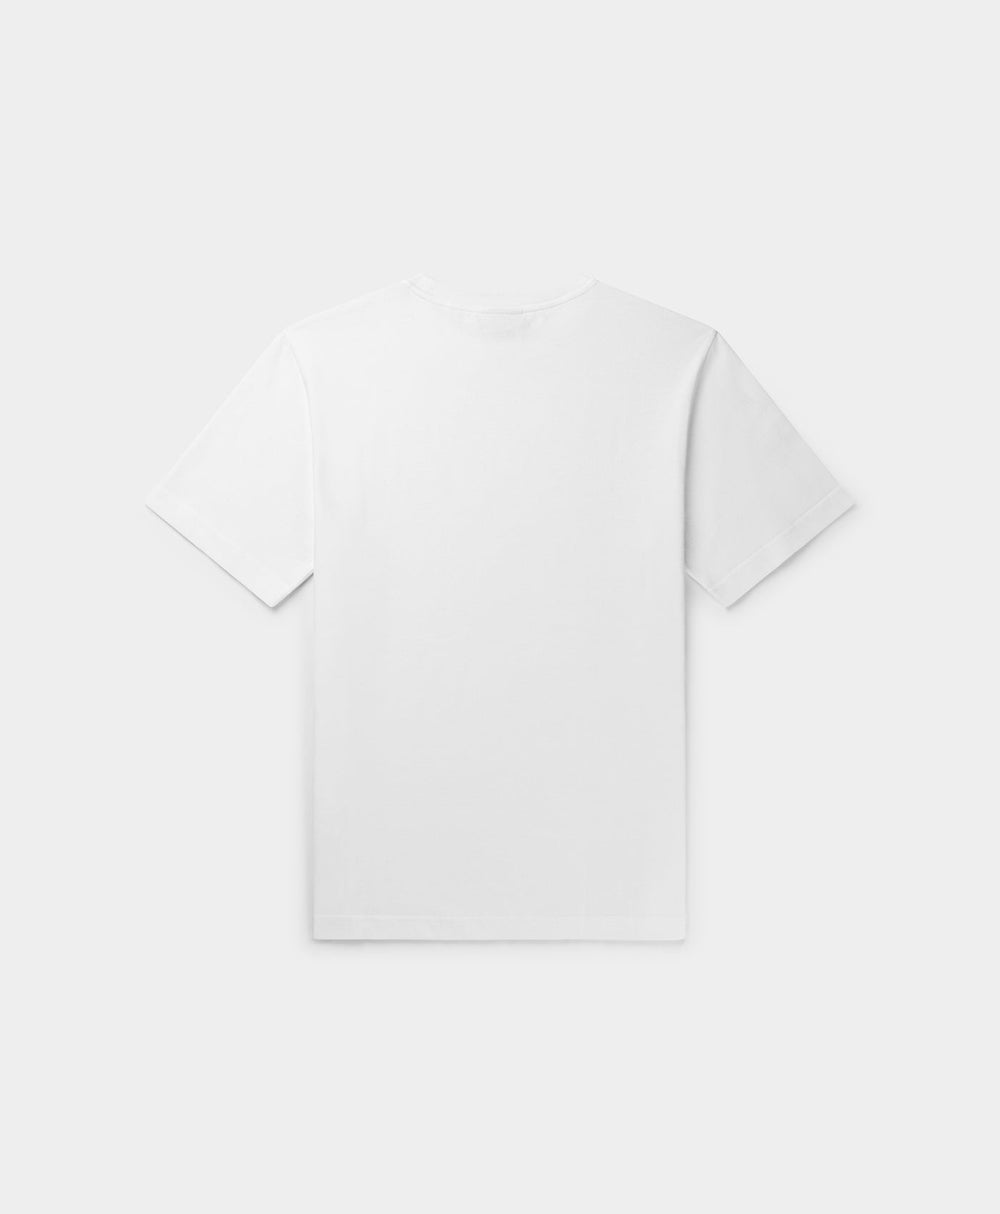 DP - White Alias T-Shirt - Packshot - Rear